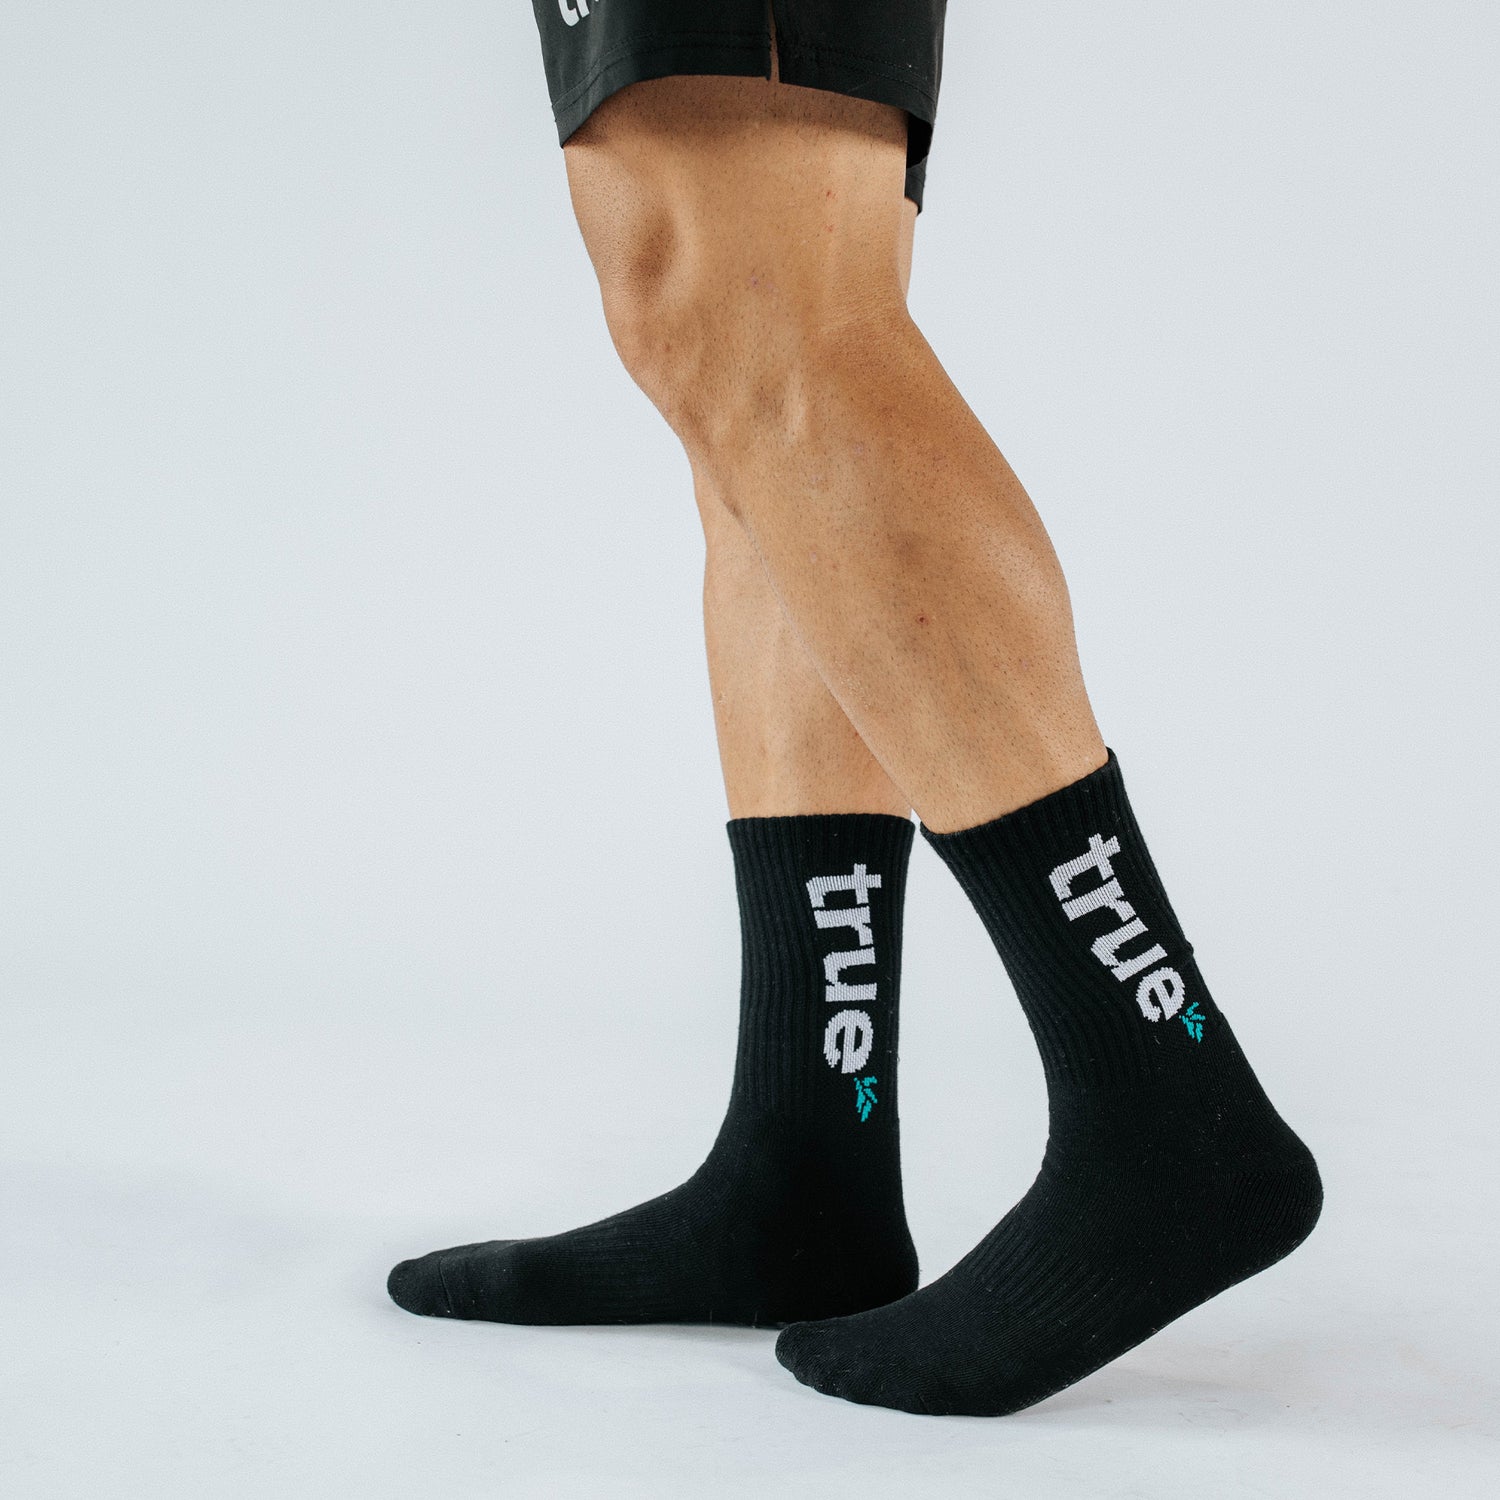 True Socks - Black/White